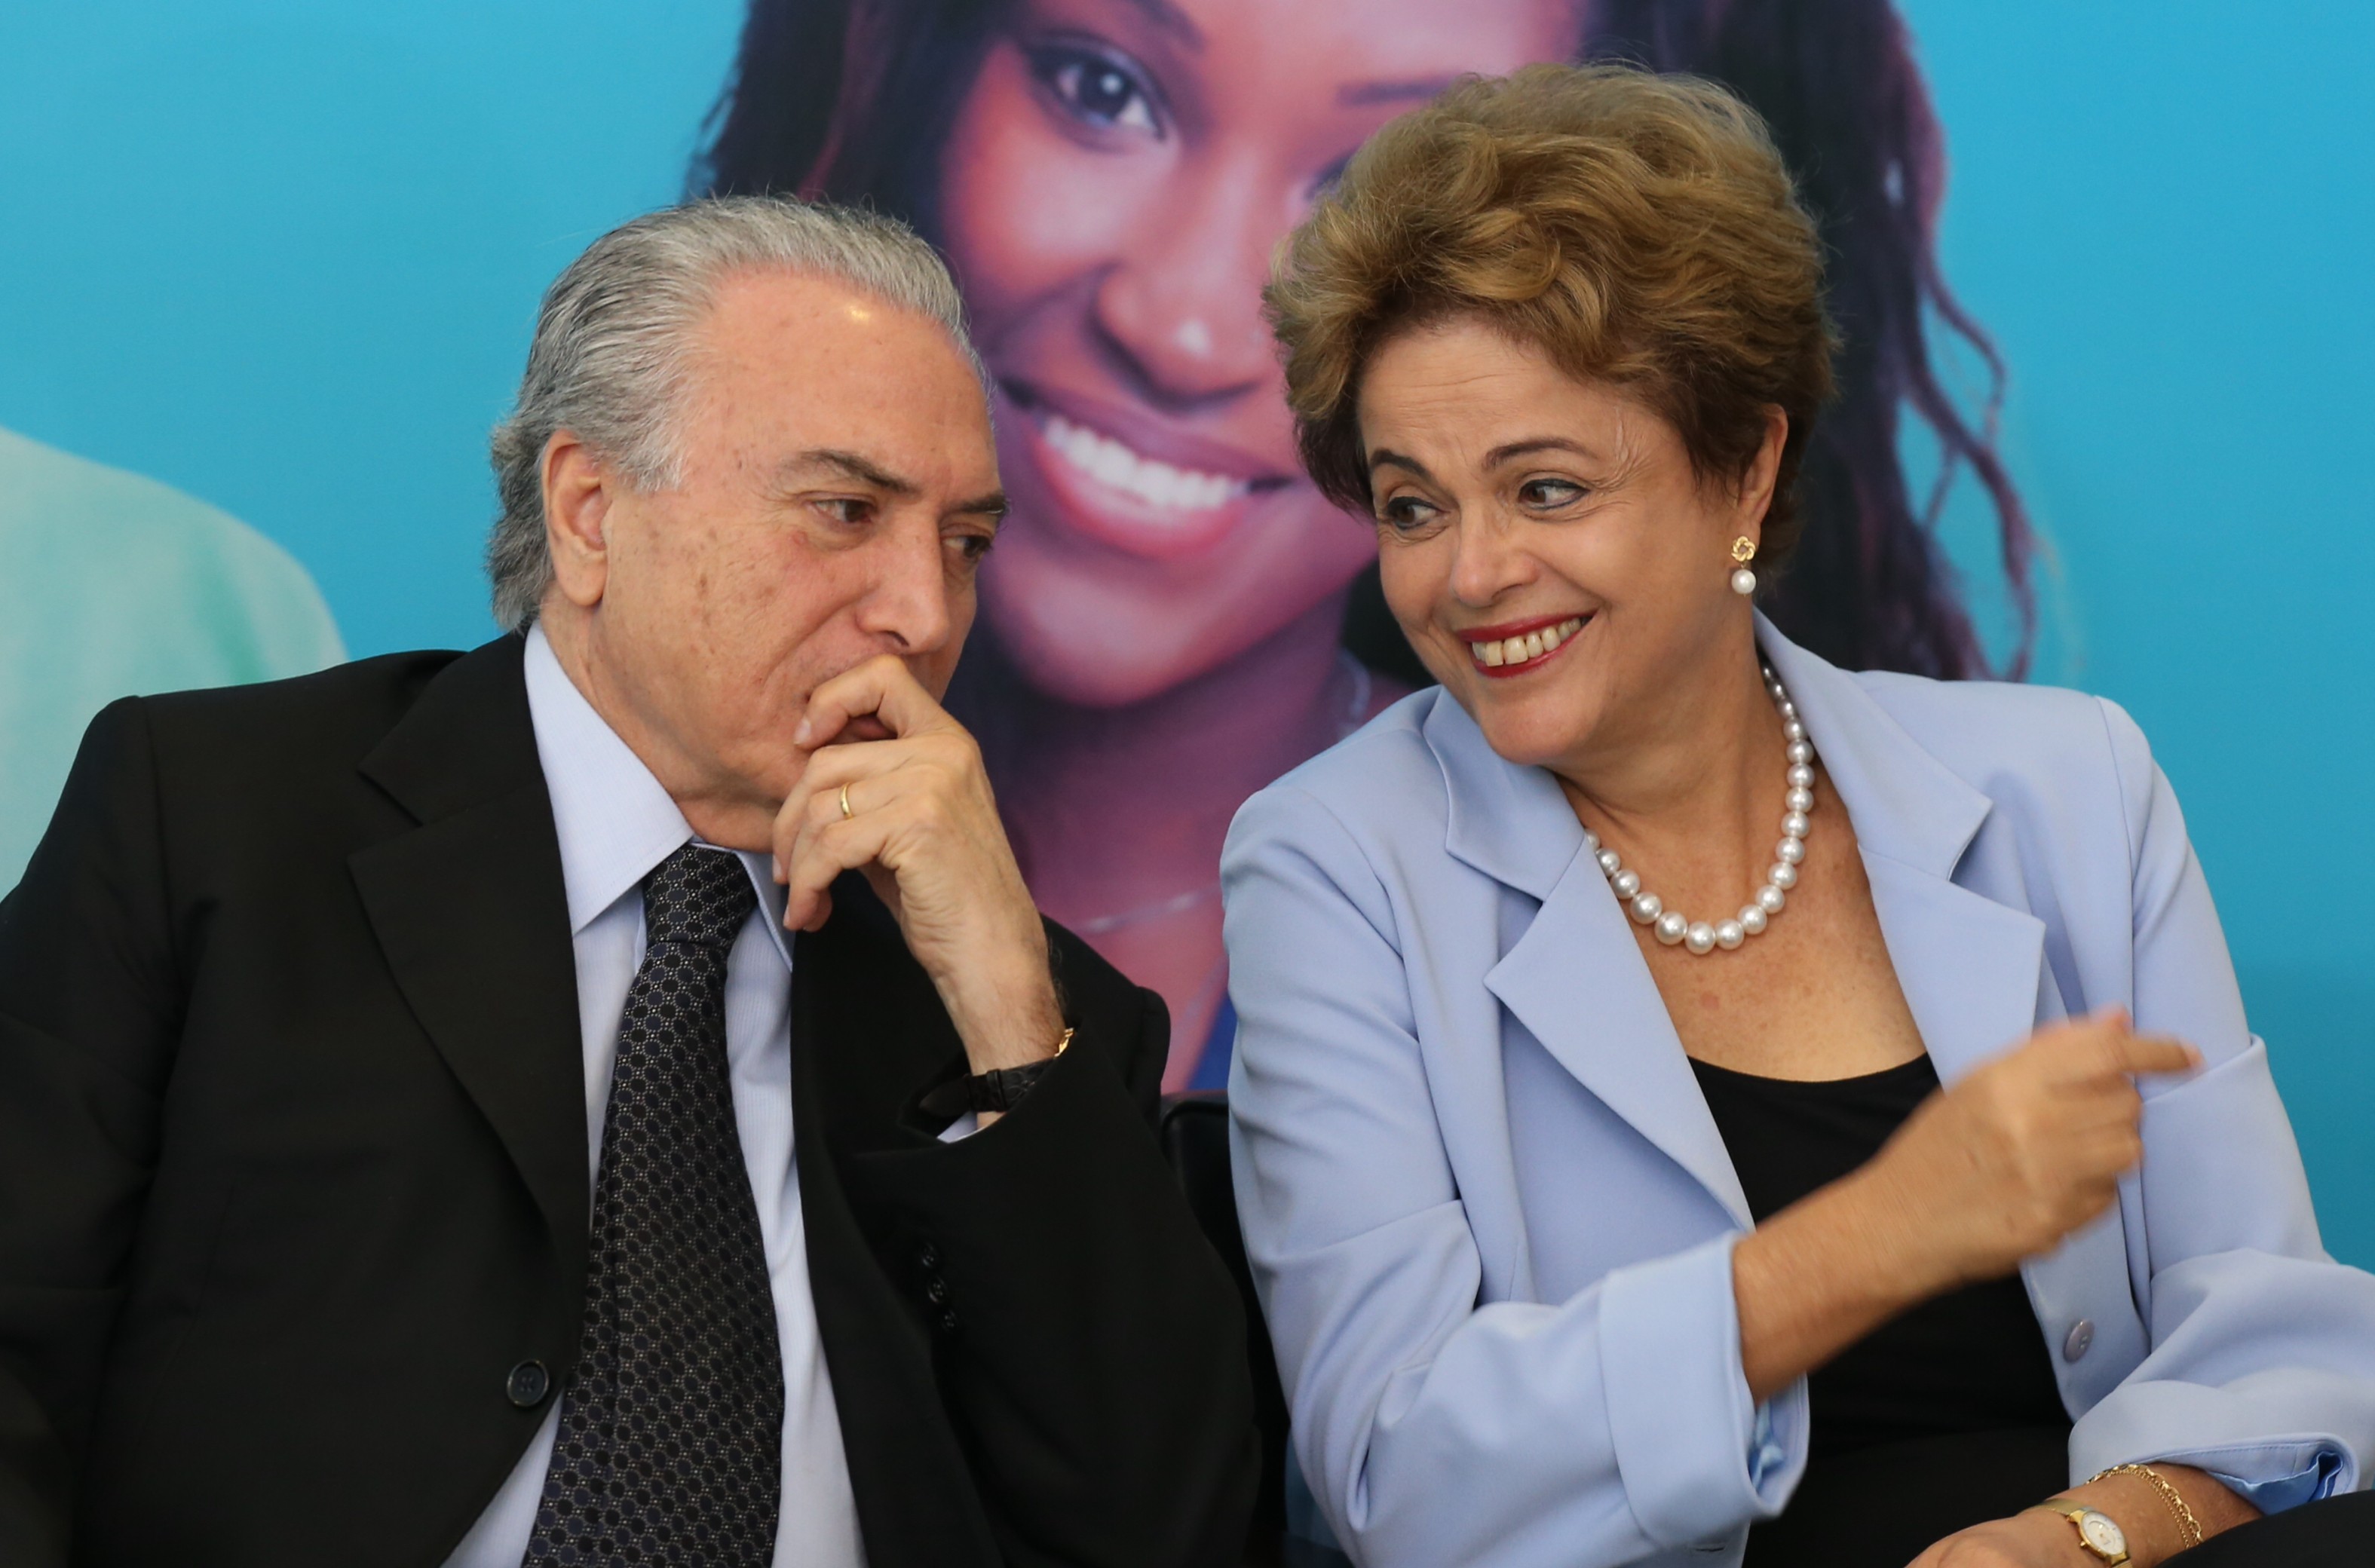 O xeque-mate de Dilma em seus adversários - O Cafezinho